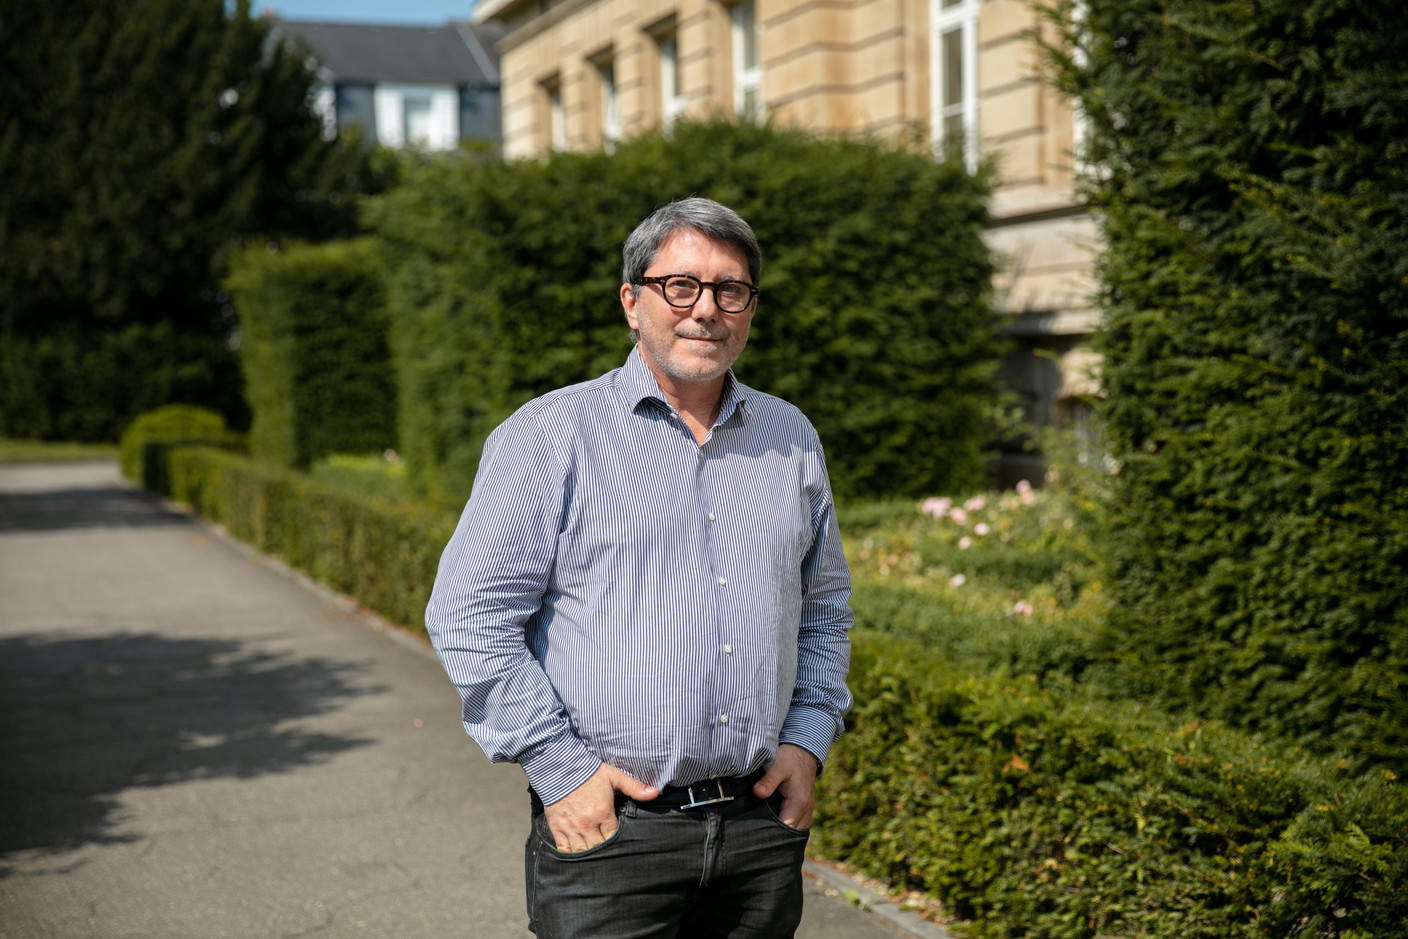 Le directeur du Lycée de garçons, Pascal Bermes. (Photo: Romain Gamba/Maison Moderne)